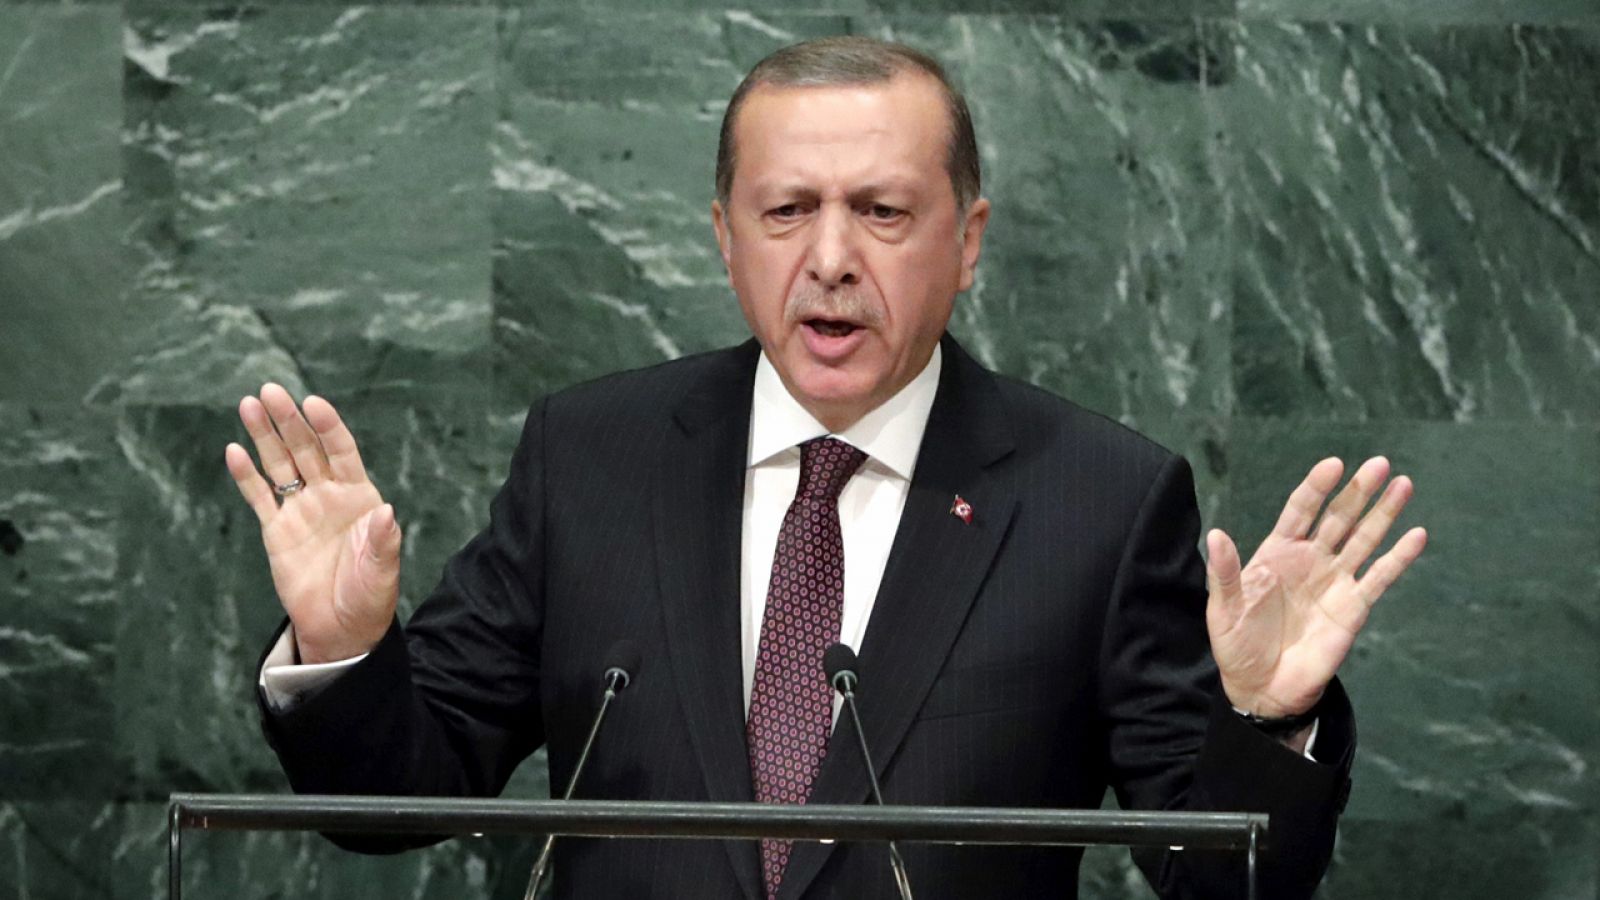 El presidente turco, Recep Tayyip Erdogan, pronuncia su discurso durante el debate del 71 periodo de sesiones de la Asamblea General de Naciones Unidas